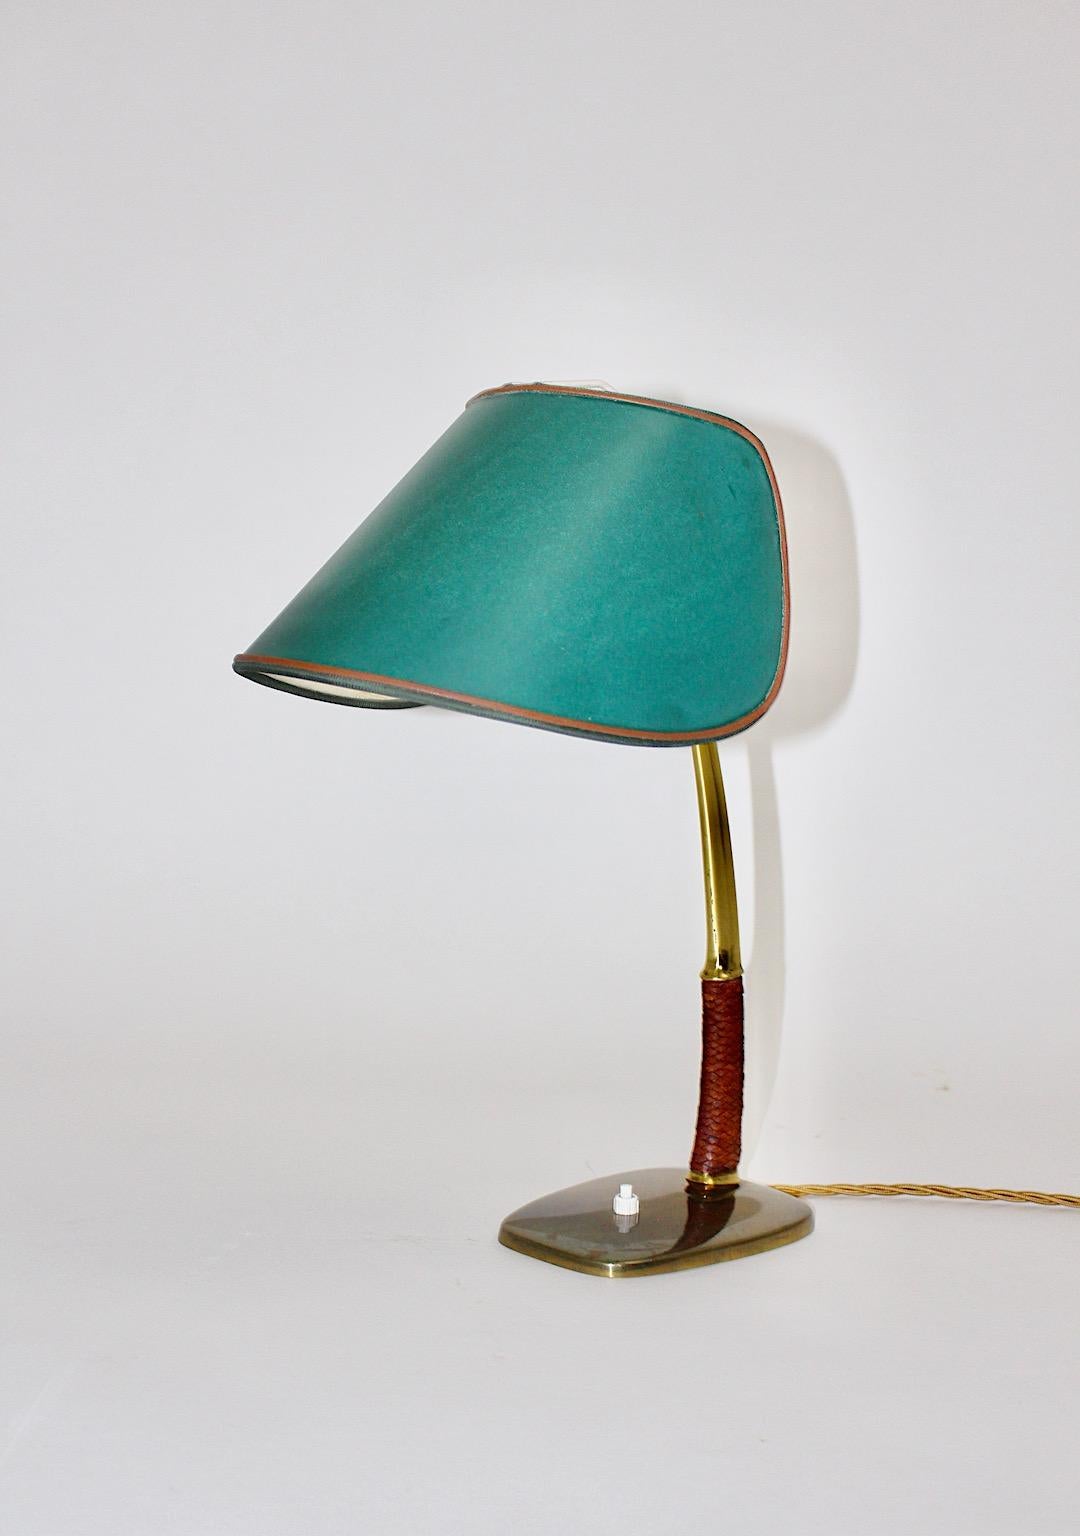 Mid-Century Modern Vintage Tischlampe oder Schreibtischlampe aus Messing, Leder und vernickeltem Metall Mod. 1191 Arnold, die von Kalmar in Wien in den 1950er Jahren entworfen und hergestellt wurde.
Diese seltene Tischlampe hat einen geflochtenen